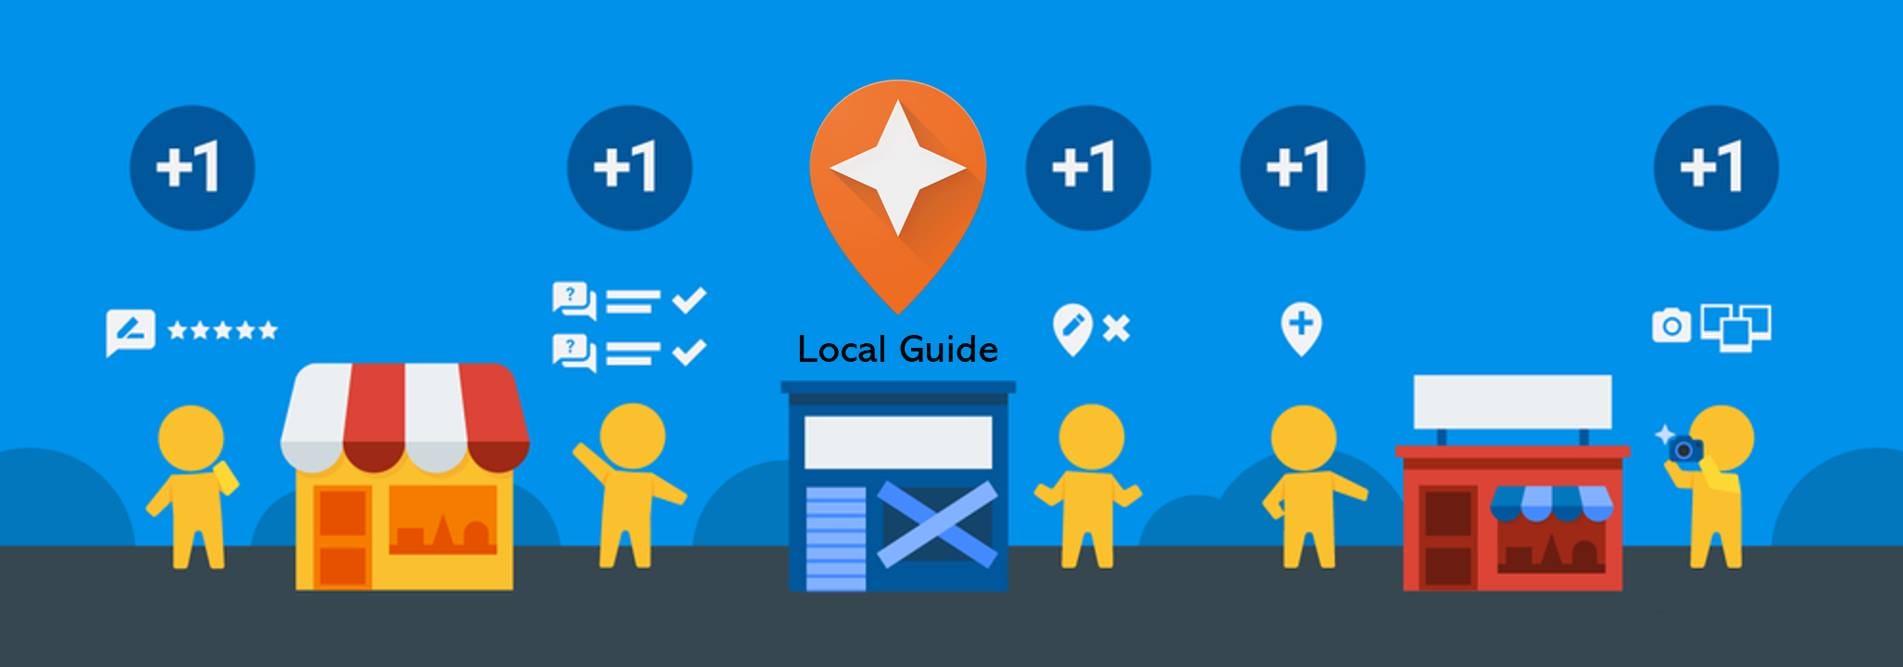 Chương trình Google Local Guide là gì